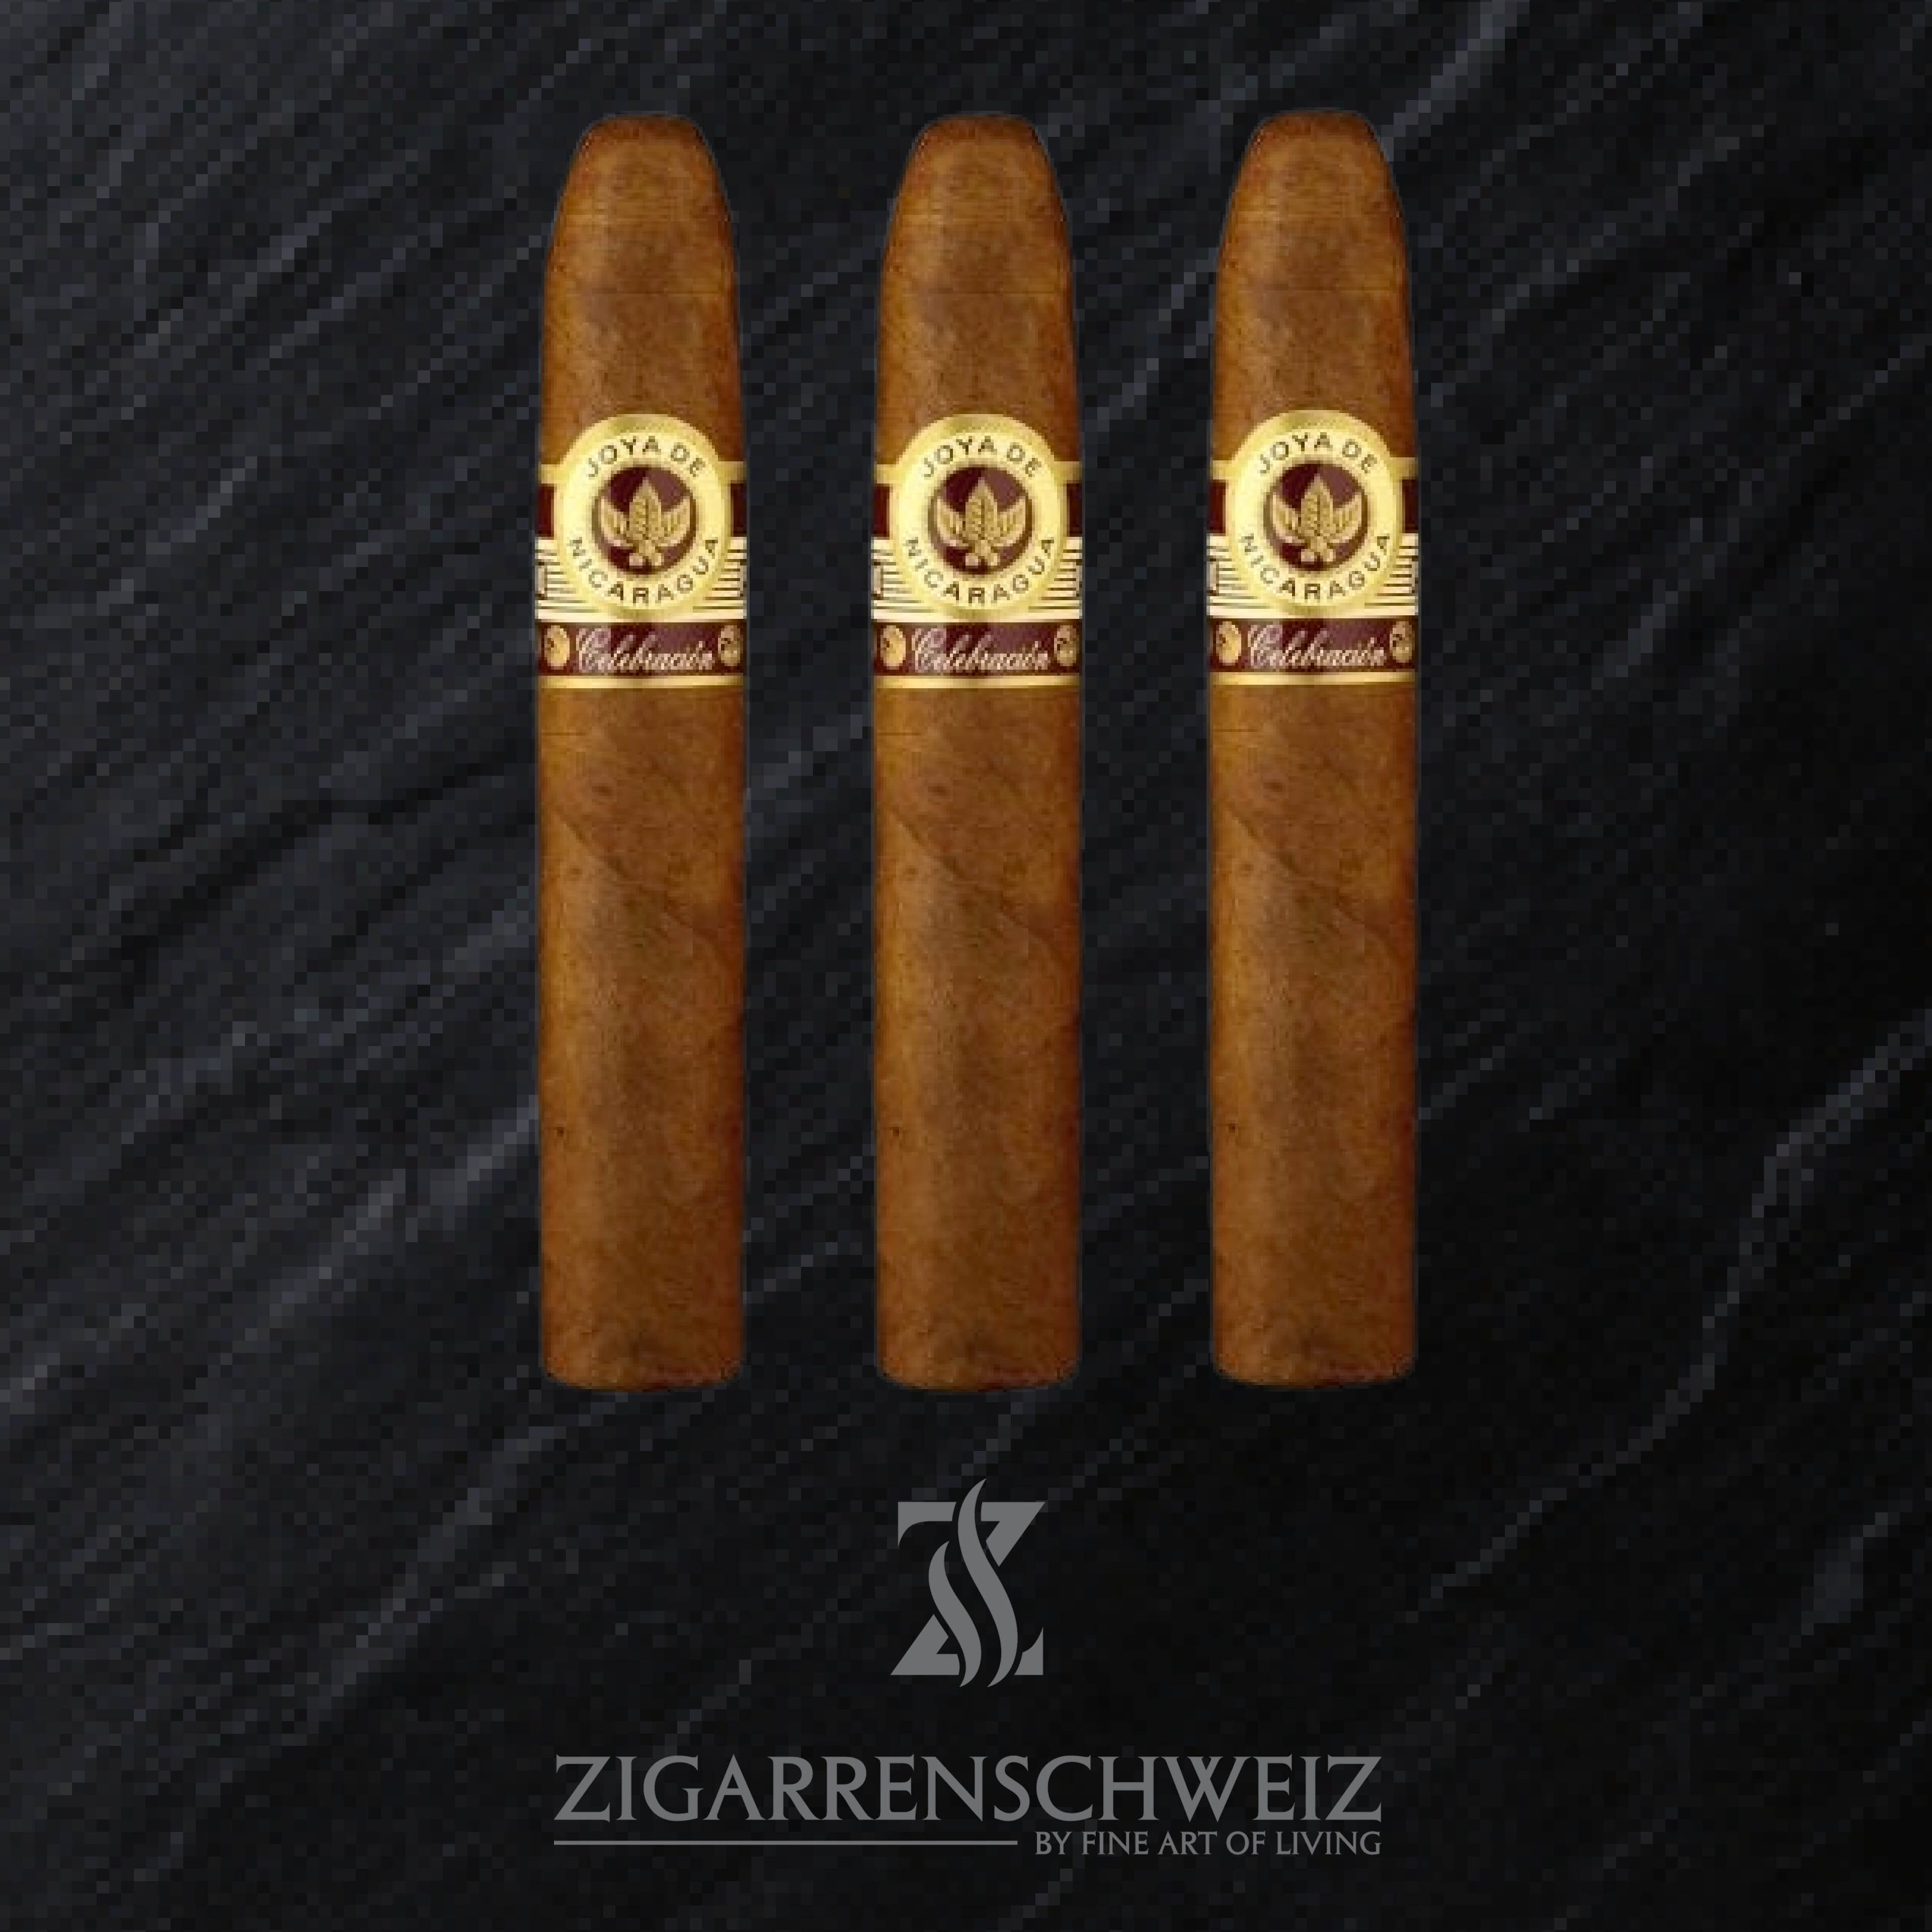 Joya de Nicaragua Celebracion Gordo Zigarren 3er Etui von Zigarren Schweiz